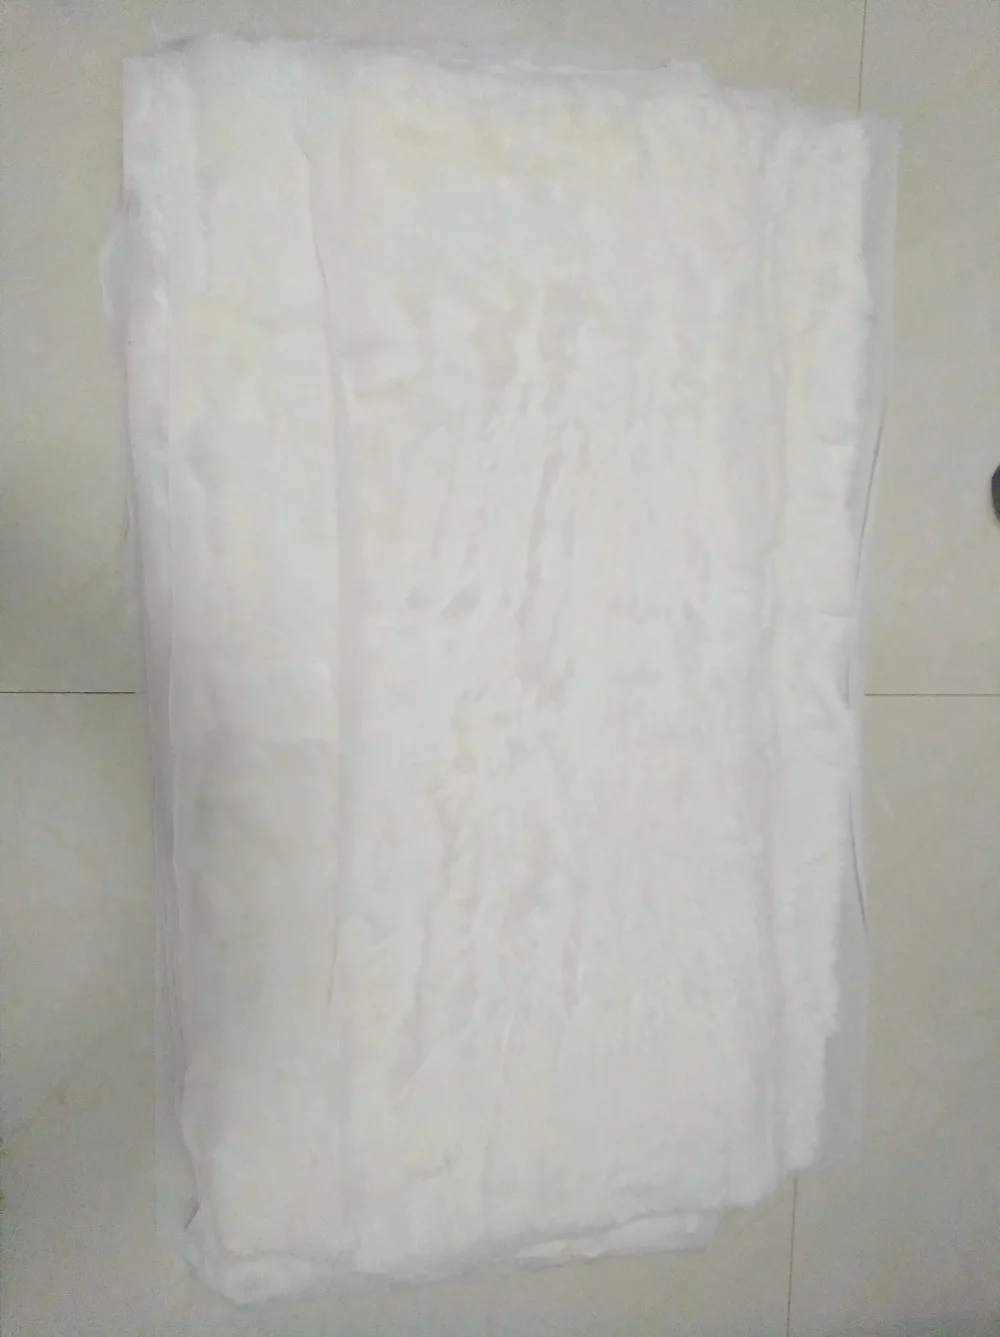 Новое поступление натуральный дешевый кроличий мех накладка-живот белое лоскутное одеяло коврик для софы пол ковер парка подкладка